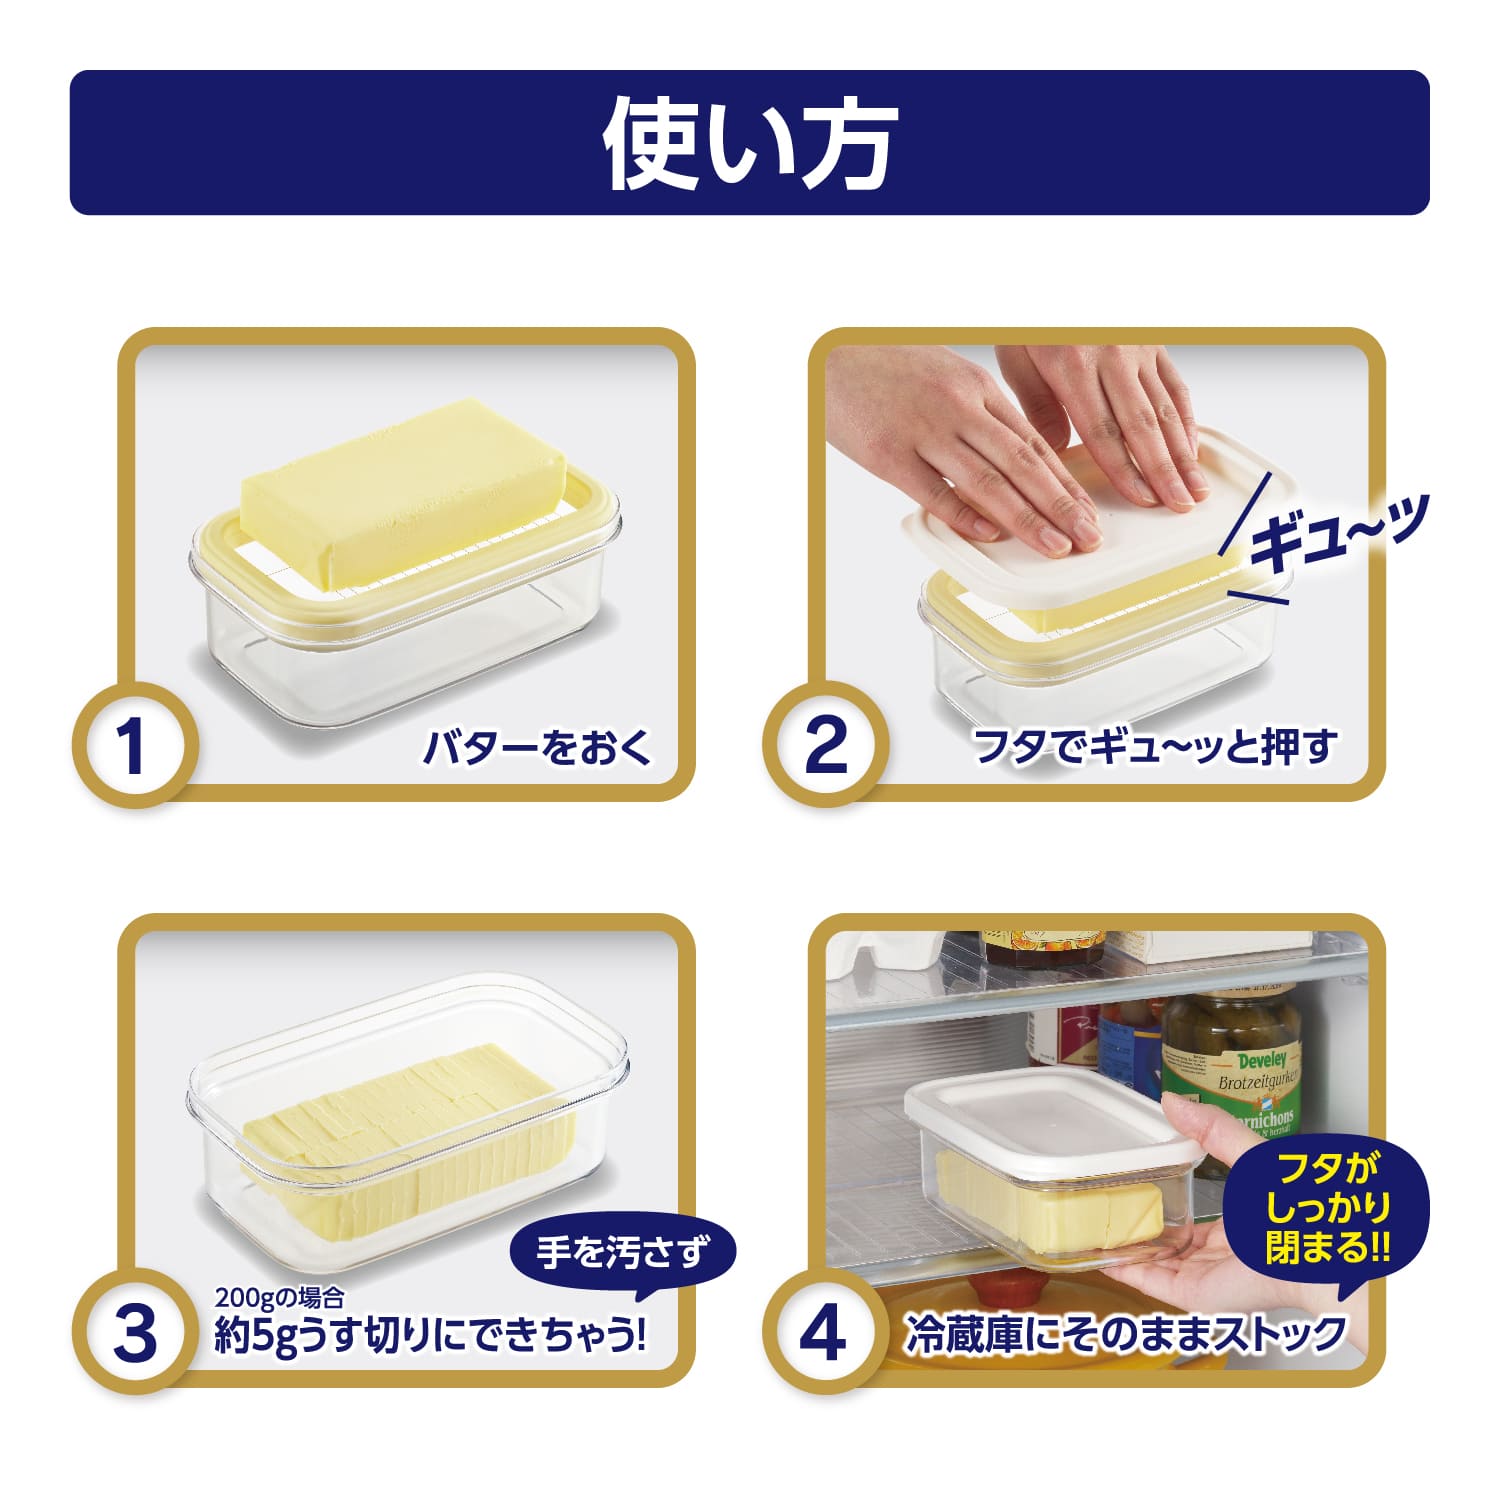 624円 新作 バターカッター プレミアム カットできちゃうバターケース 200g用 専用バターナイフ付き バター入れ バターホルダー キッチン小物